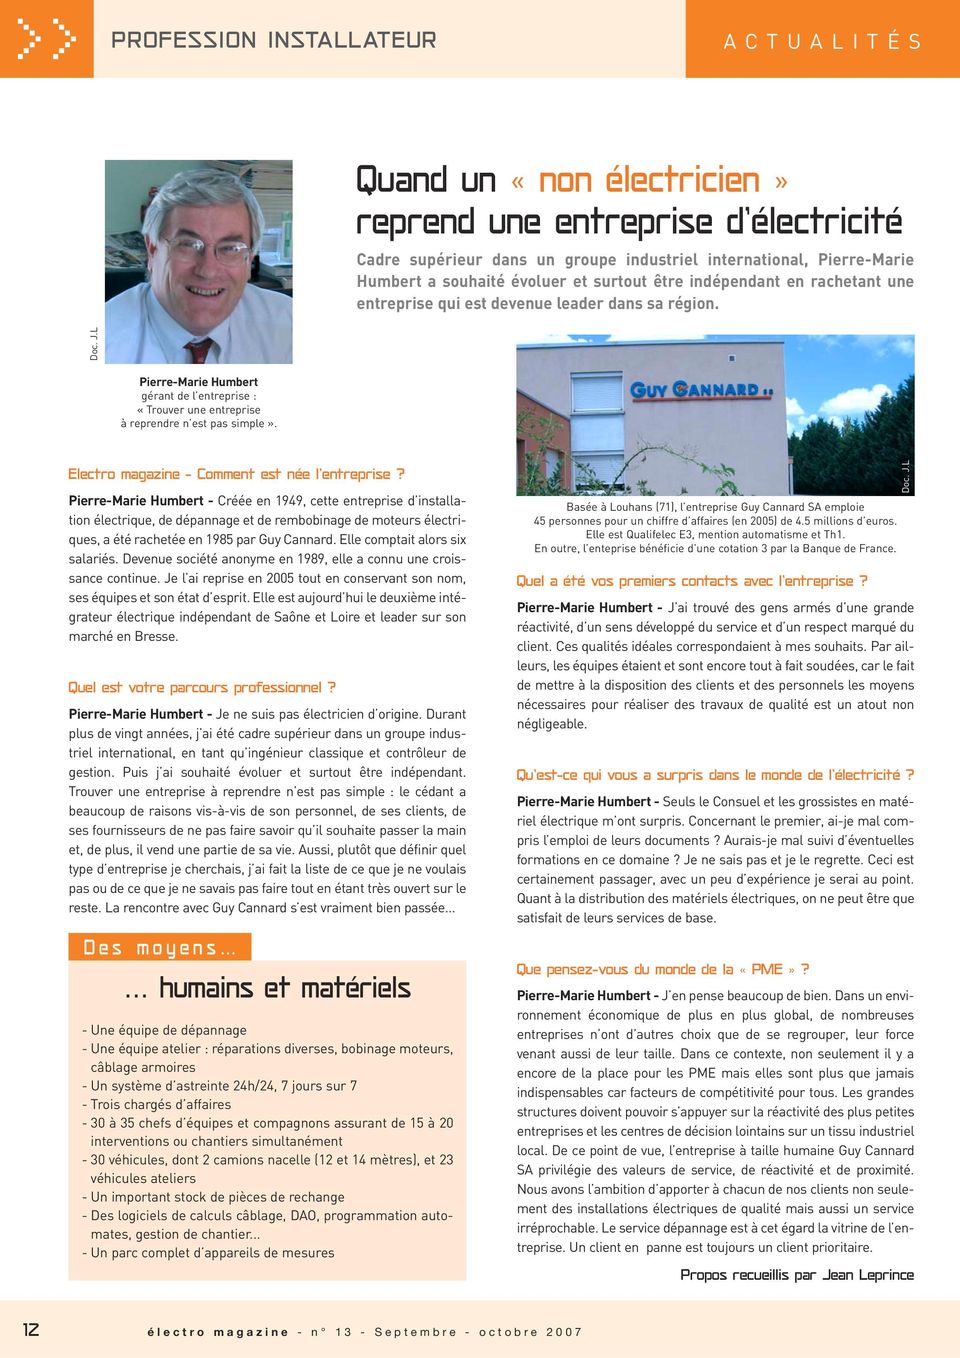 L Pierre-Marie Humbert gérant de l entreprise : «Trouver une entreprise à reprendre n est pas simple». Electro magazine - Comment est née l entreprise?